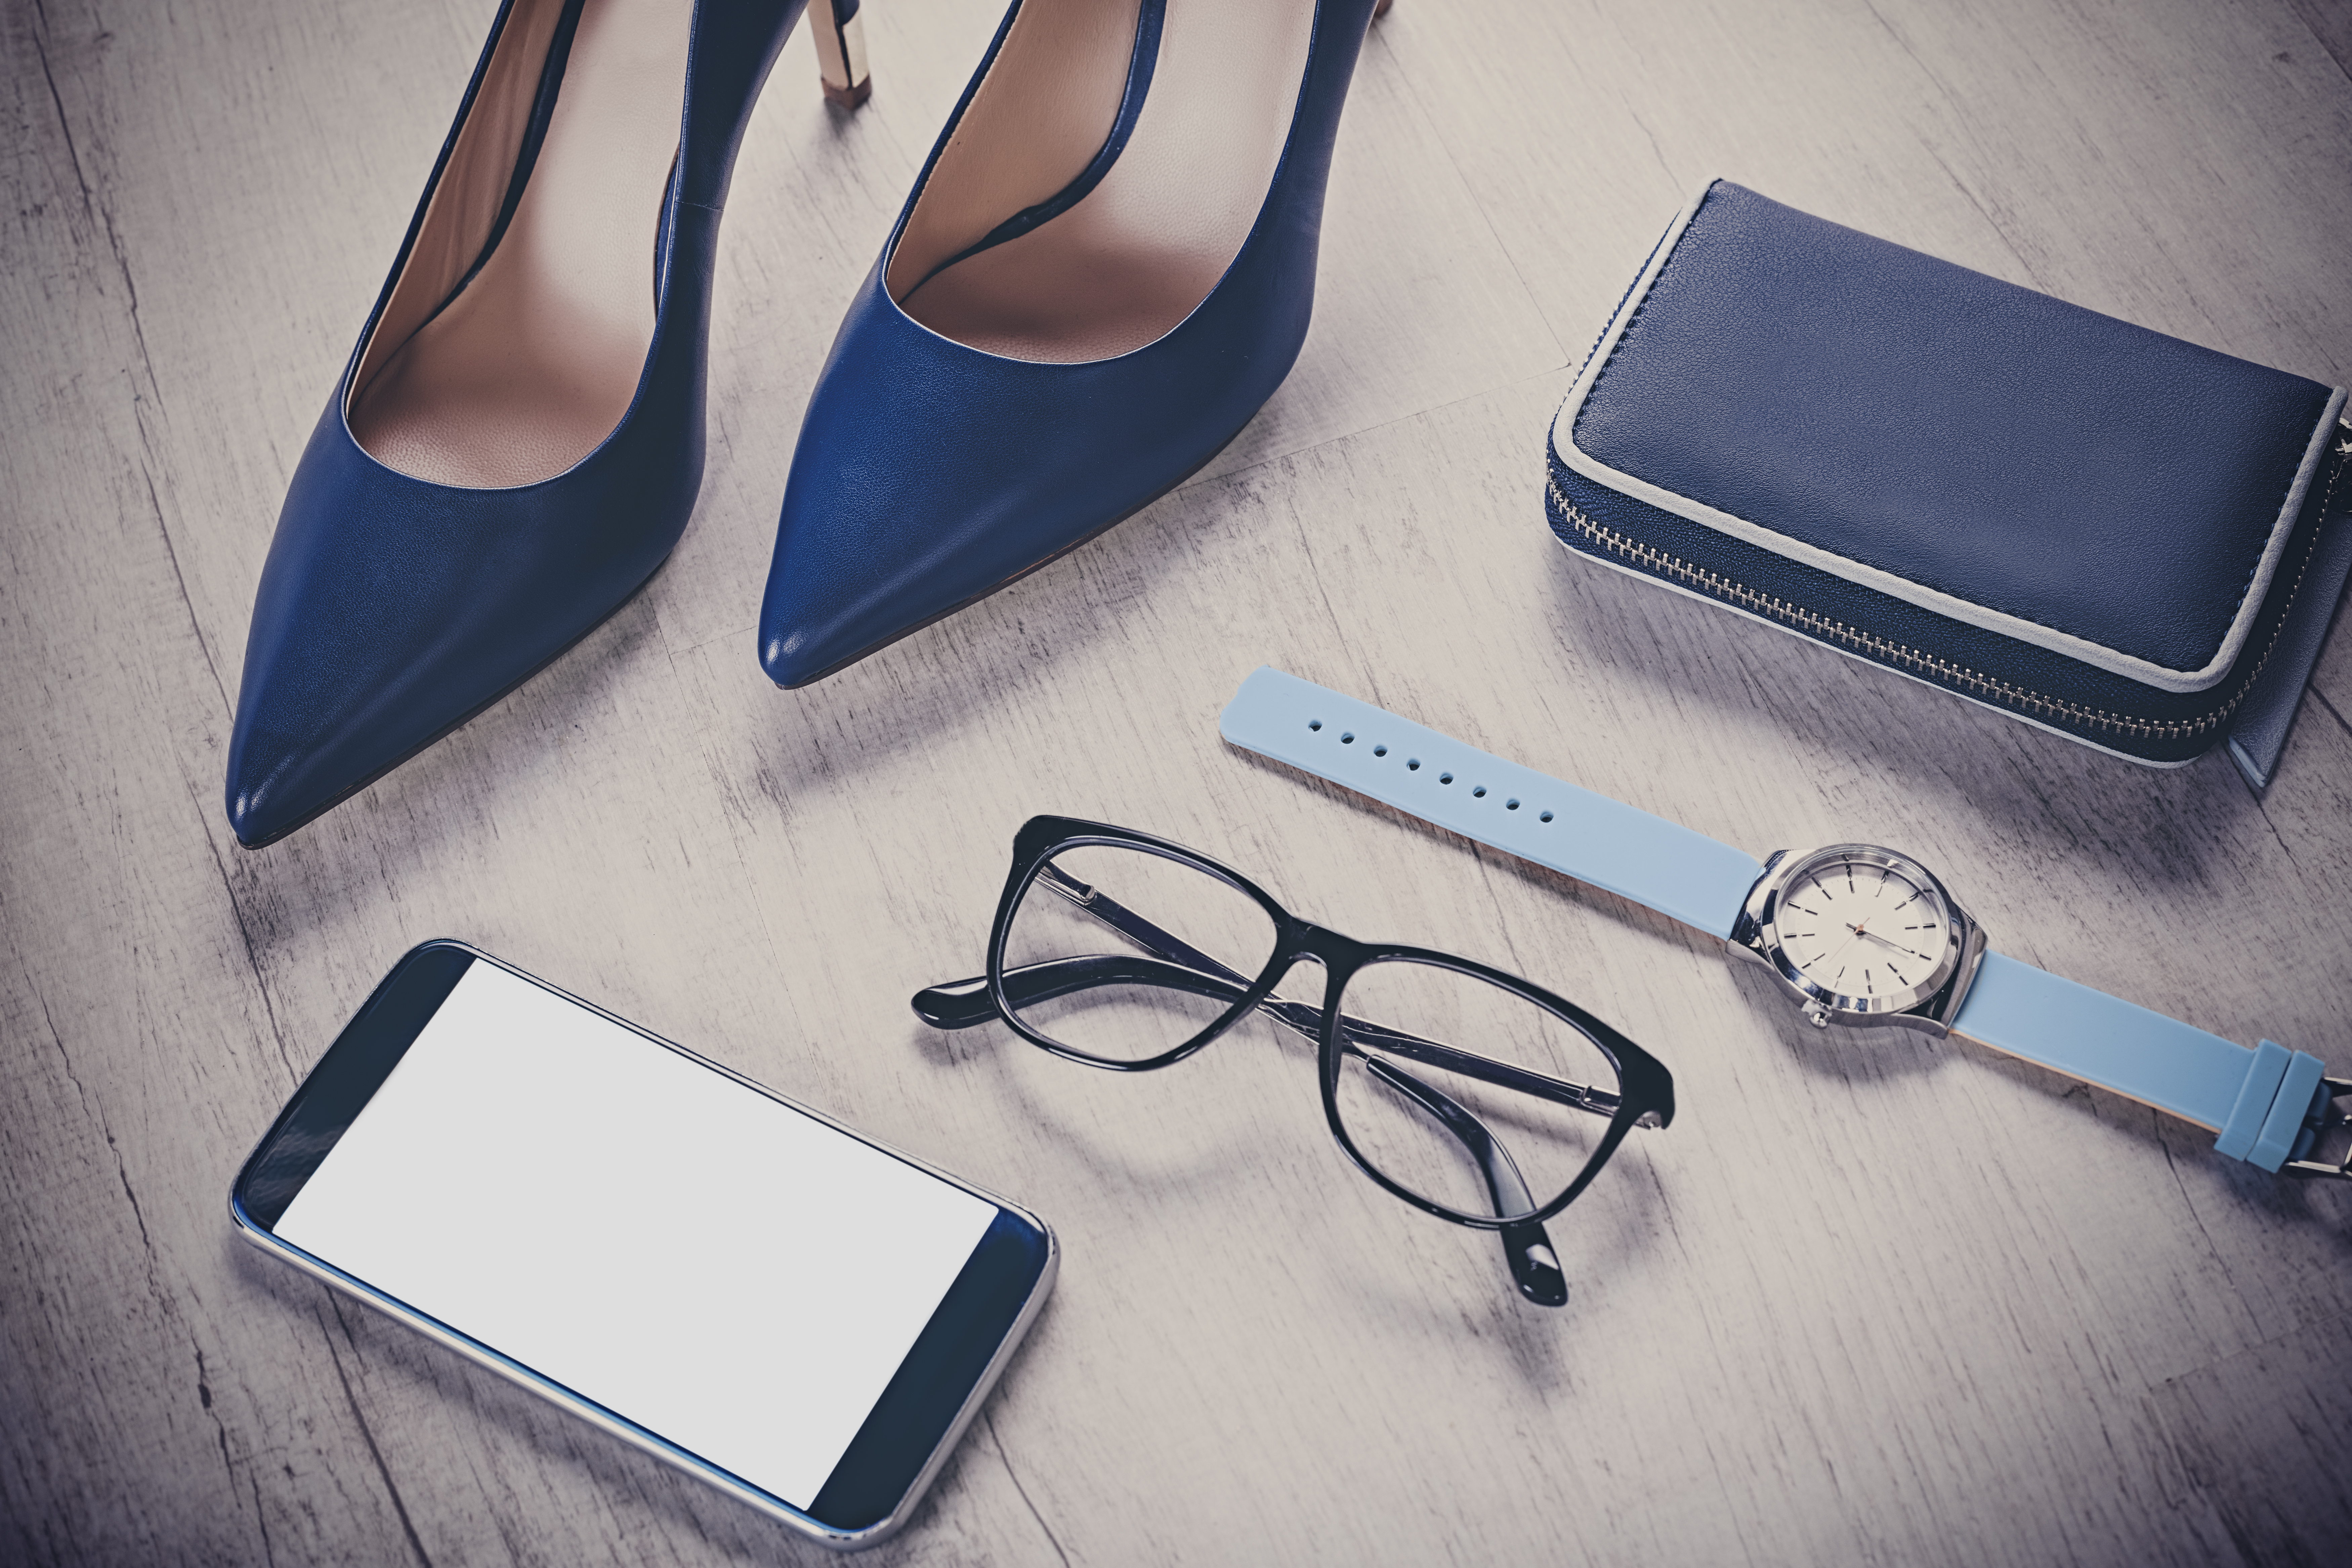 Stillettsko, mobil, briller, klokke og lommebok på gulvet